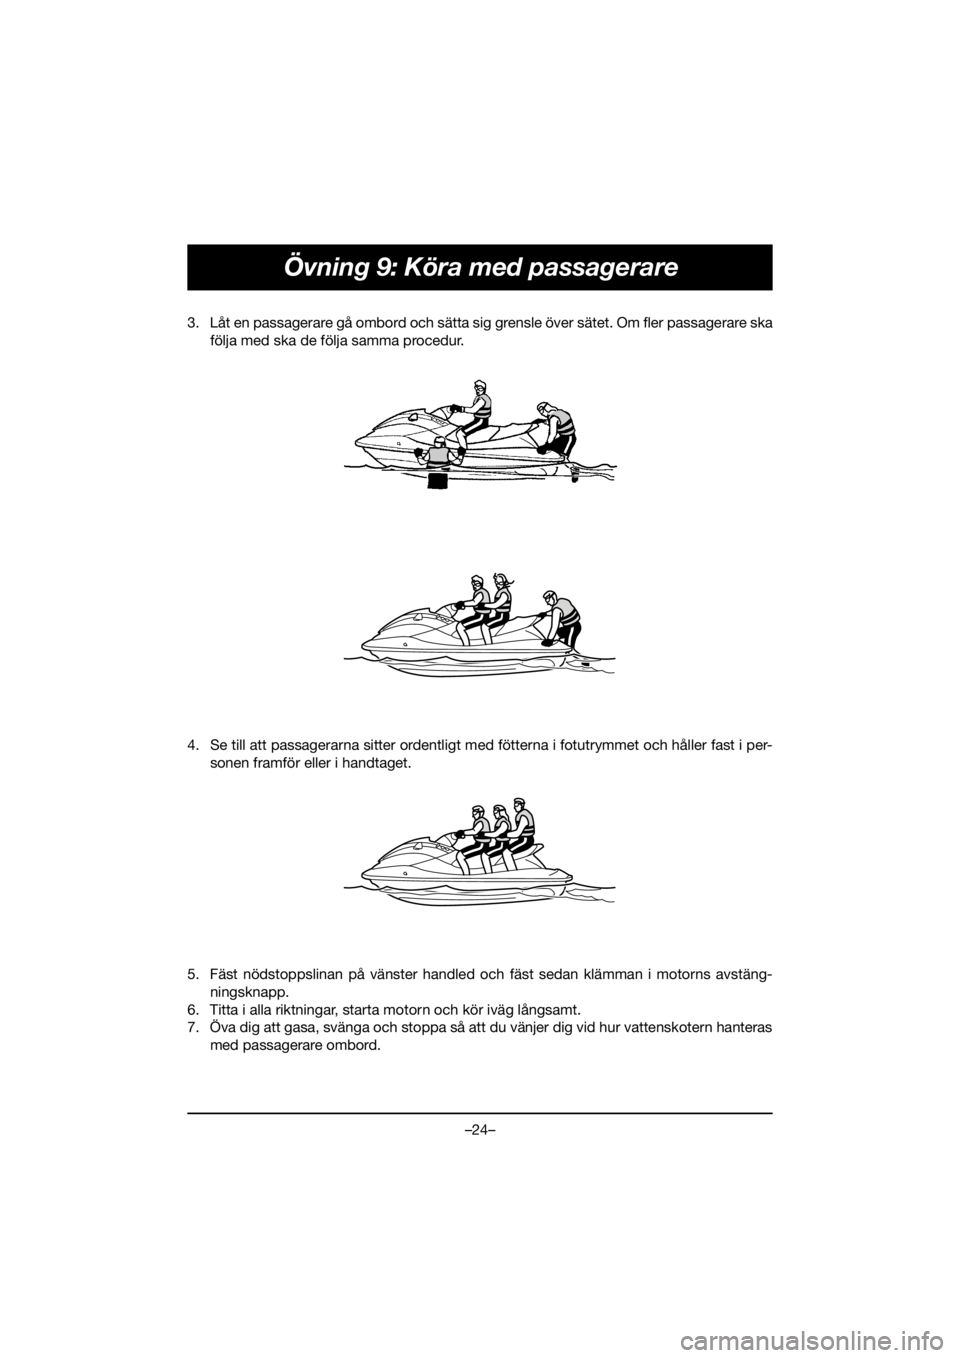 YAMAHA VX DELUXE 2021  Betriebsanleitungen (in German) –24–
Övning 9: Köra med passagerare
3. Låt en passagerare gå ombord och sätta sig grensle över sätet. Om fler passagerare ska
följa med ska de följa samma procedur. 
4. Se till att passag